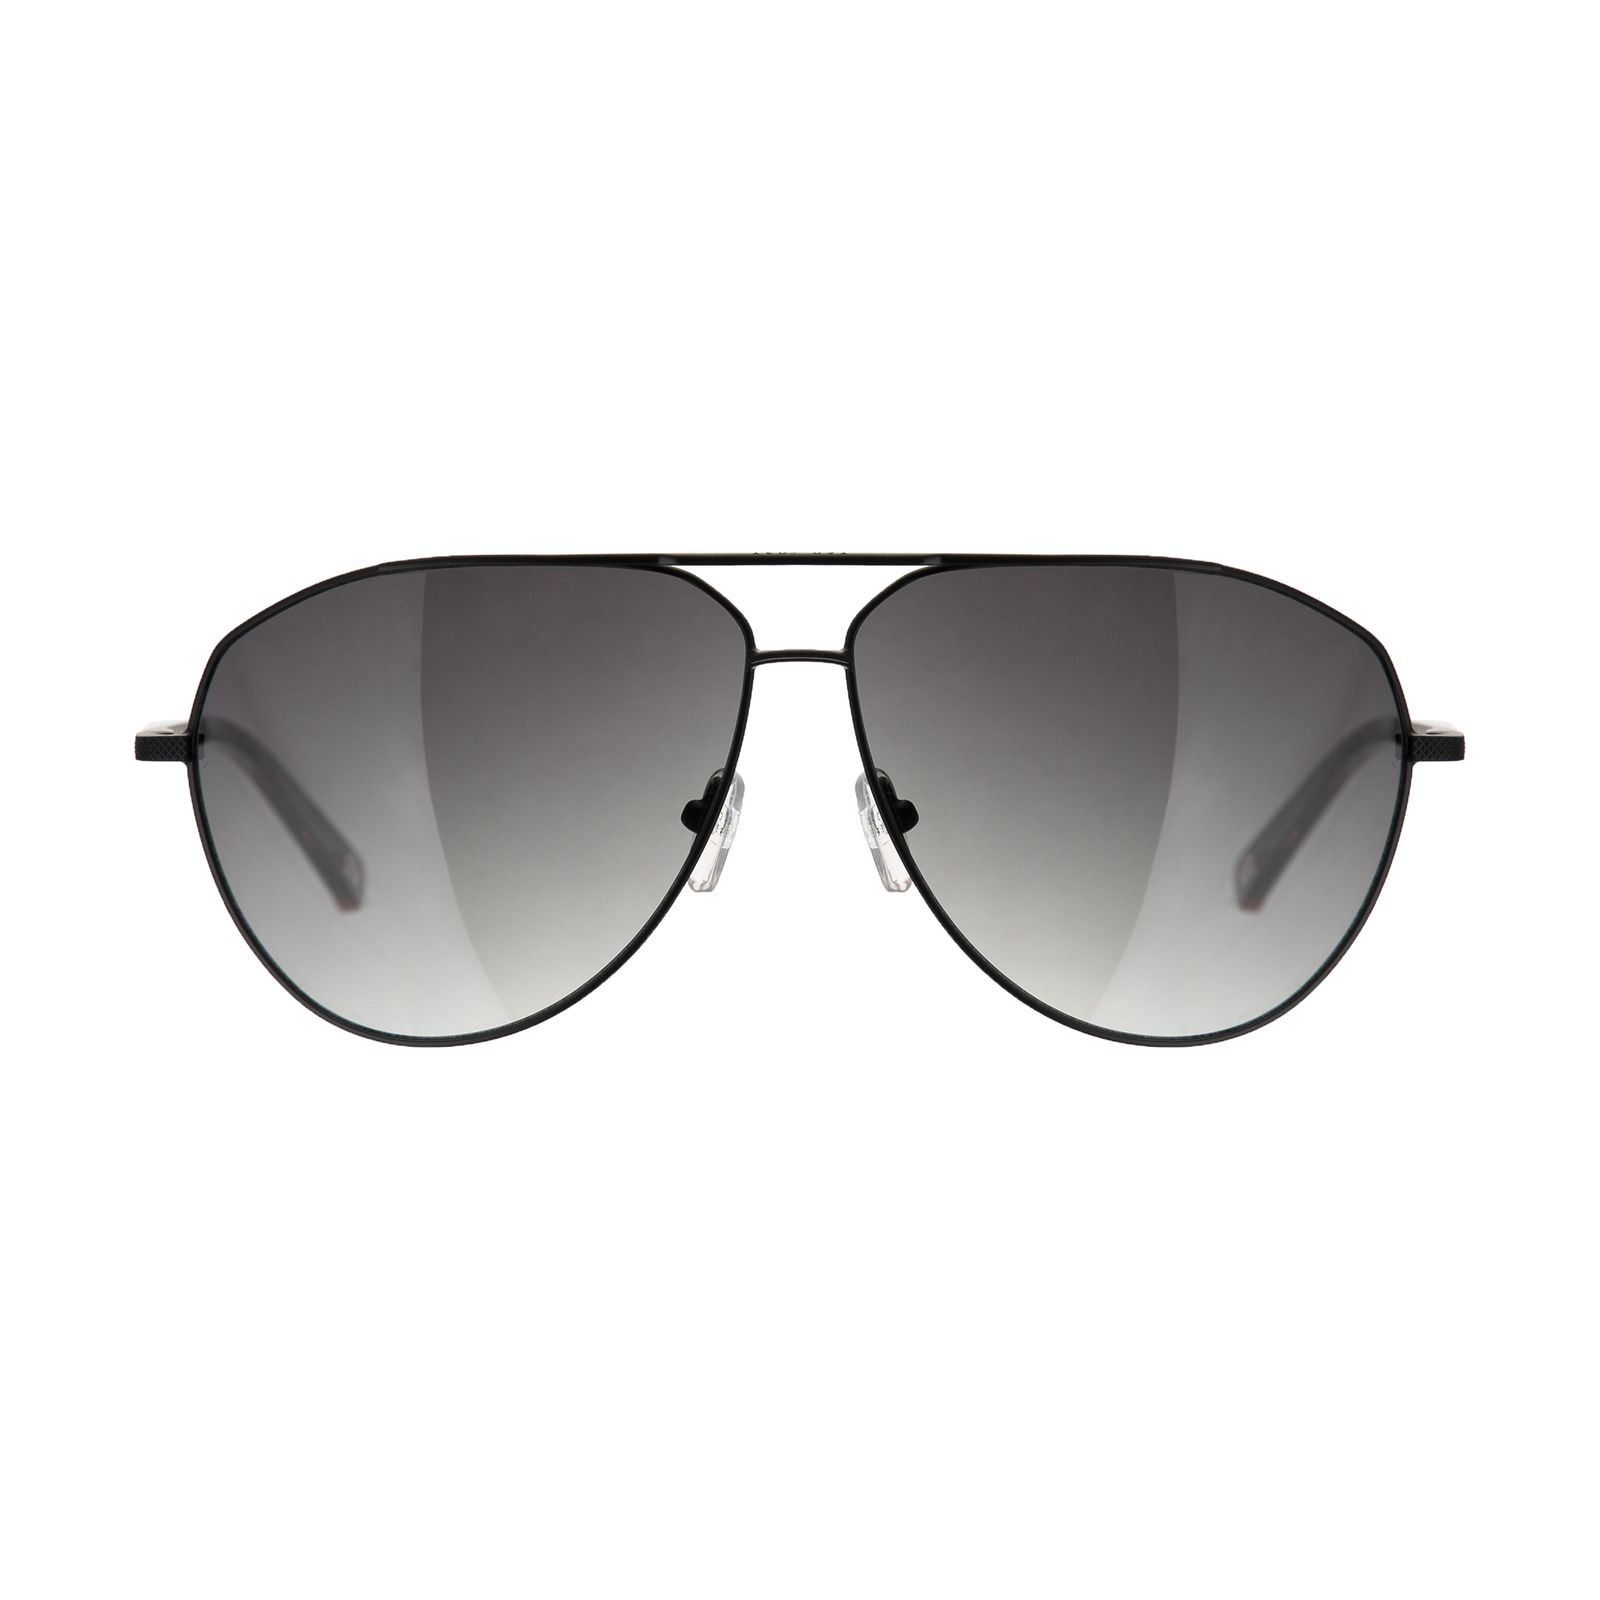 عینک آفتابی مردانه تد بیکر مدل TB 1449 001 -  - 1